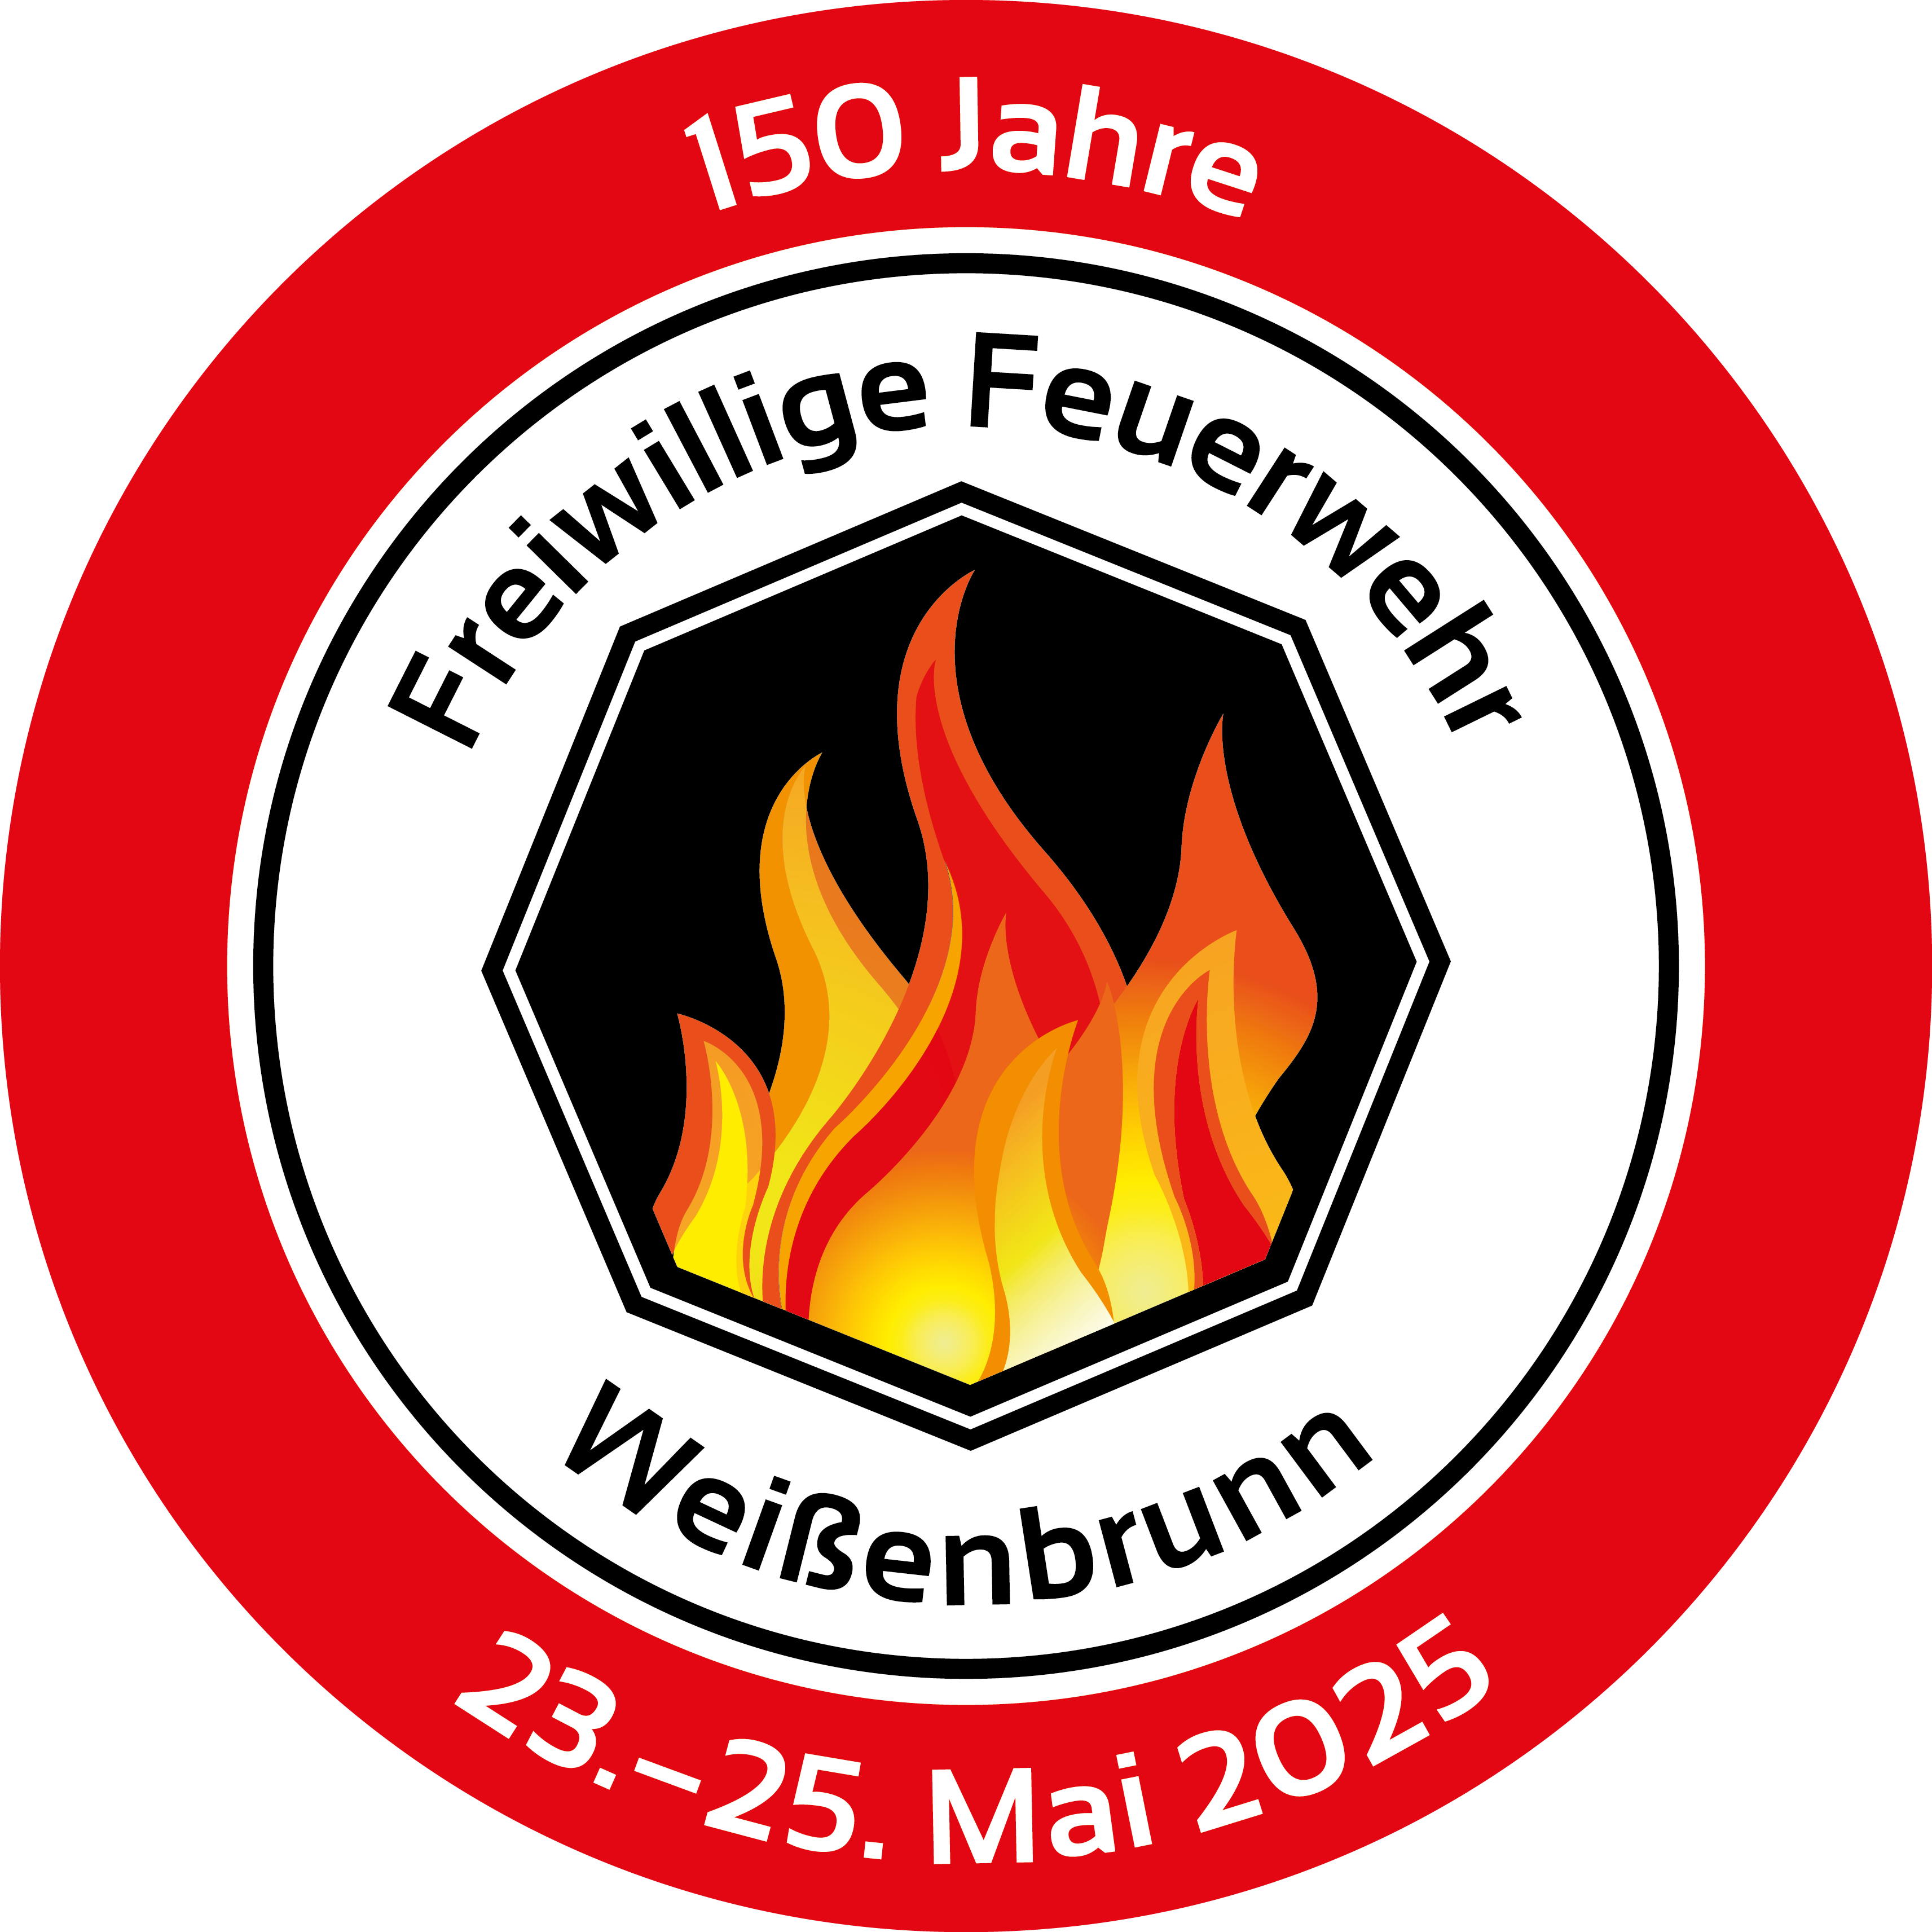 ffwweissenbrunn logo